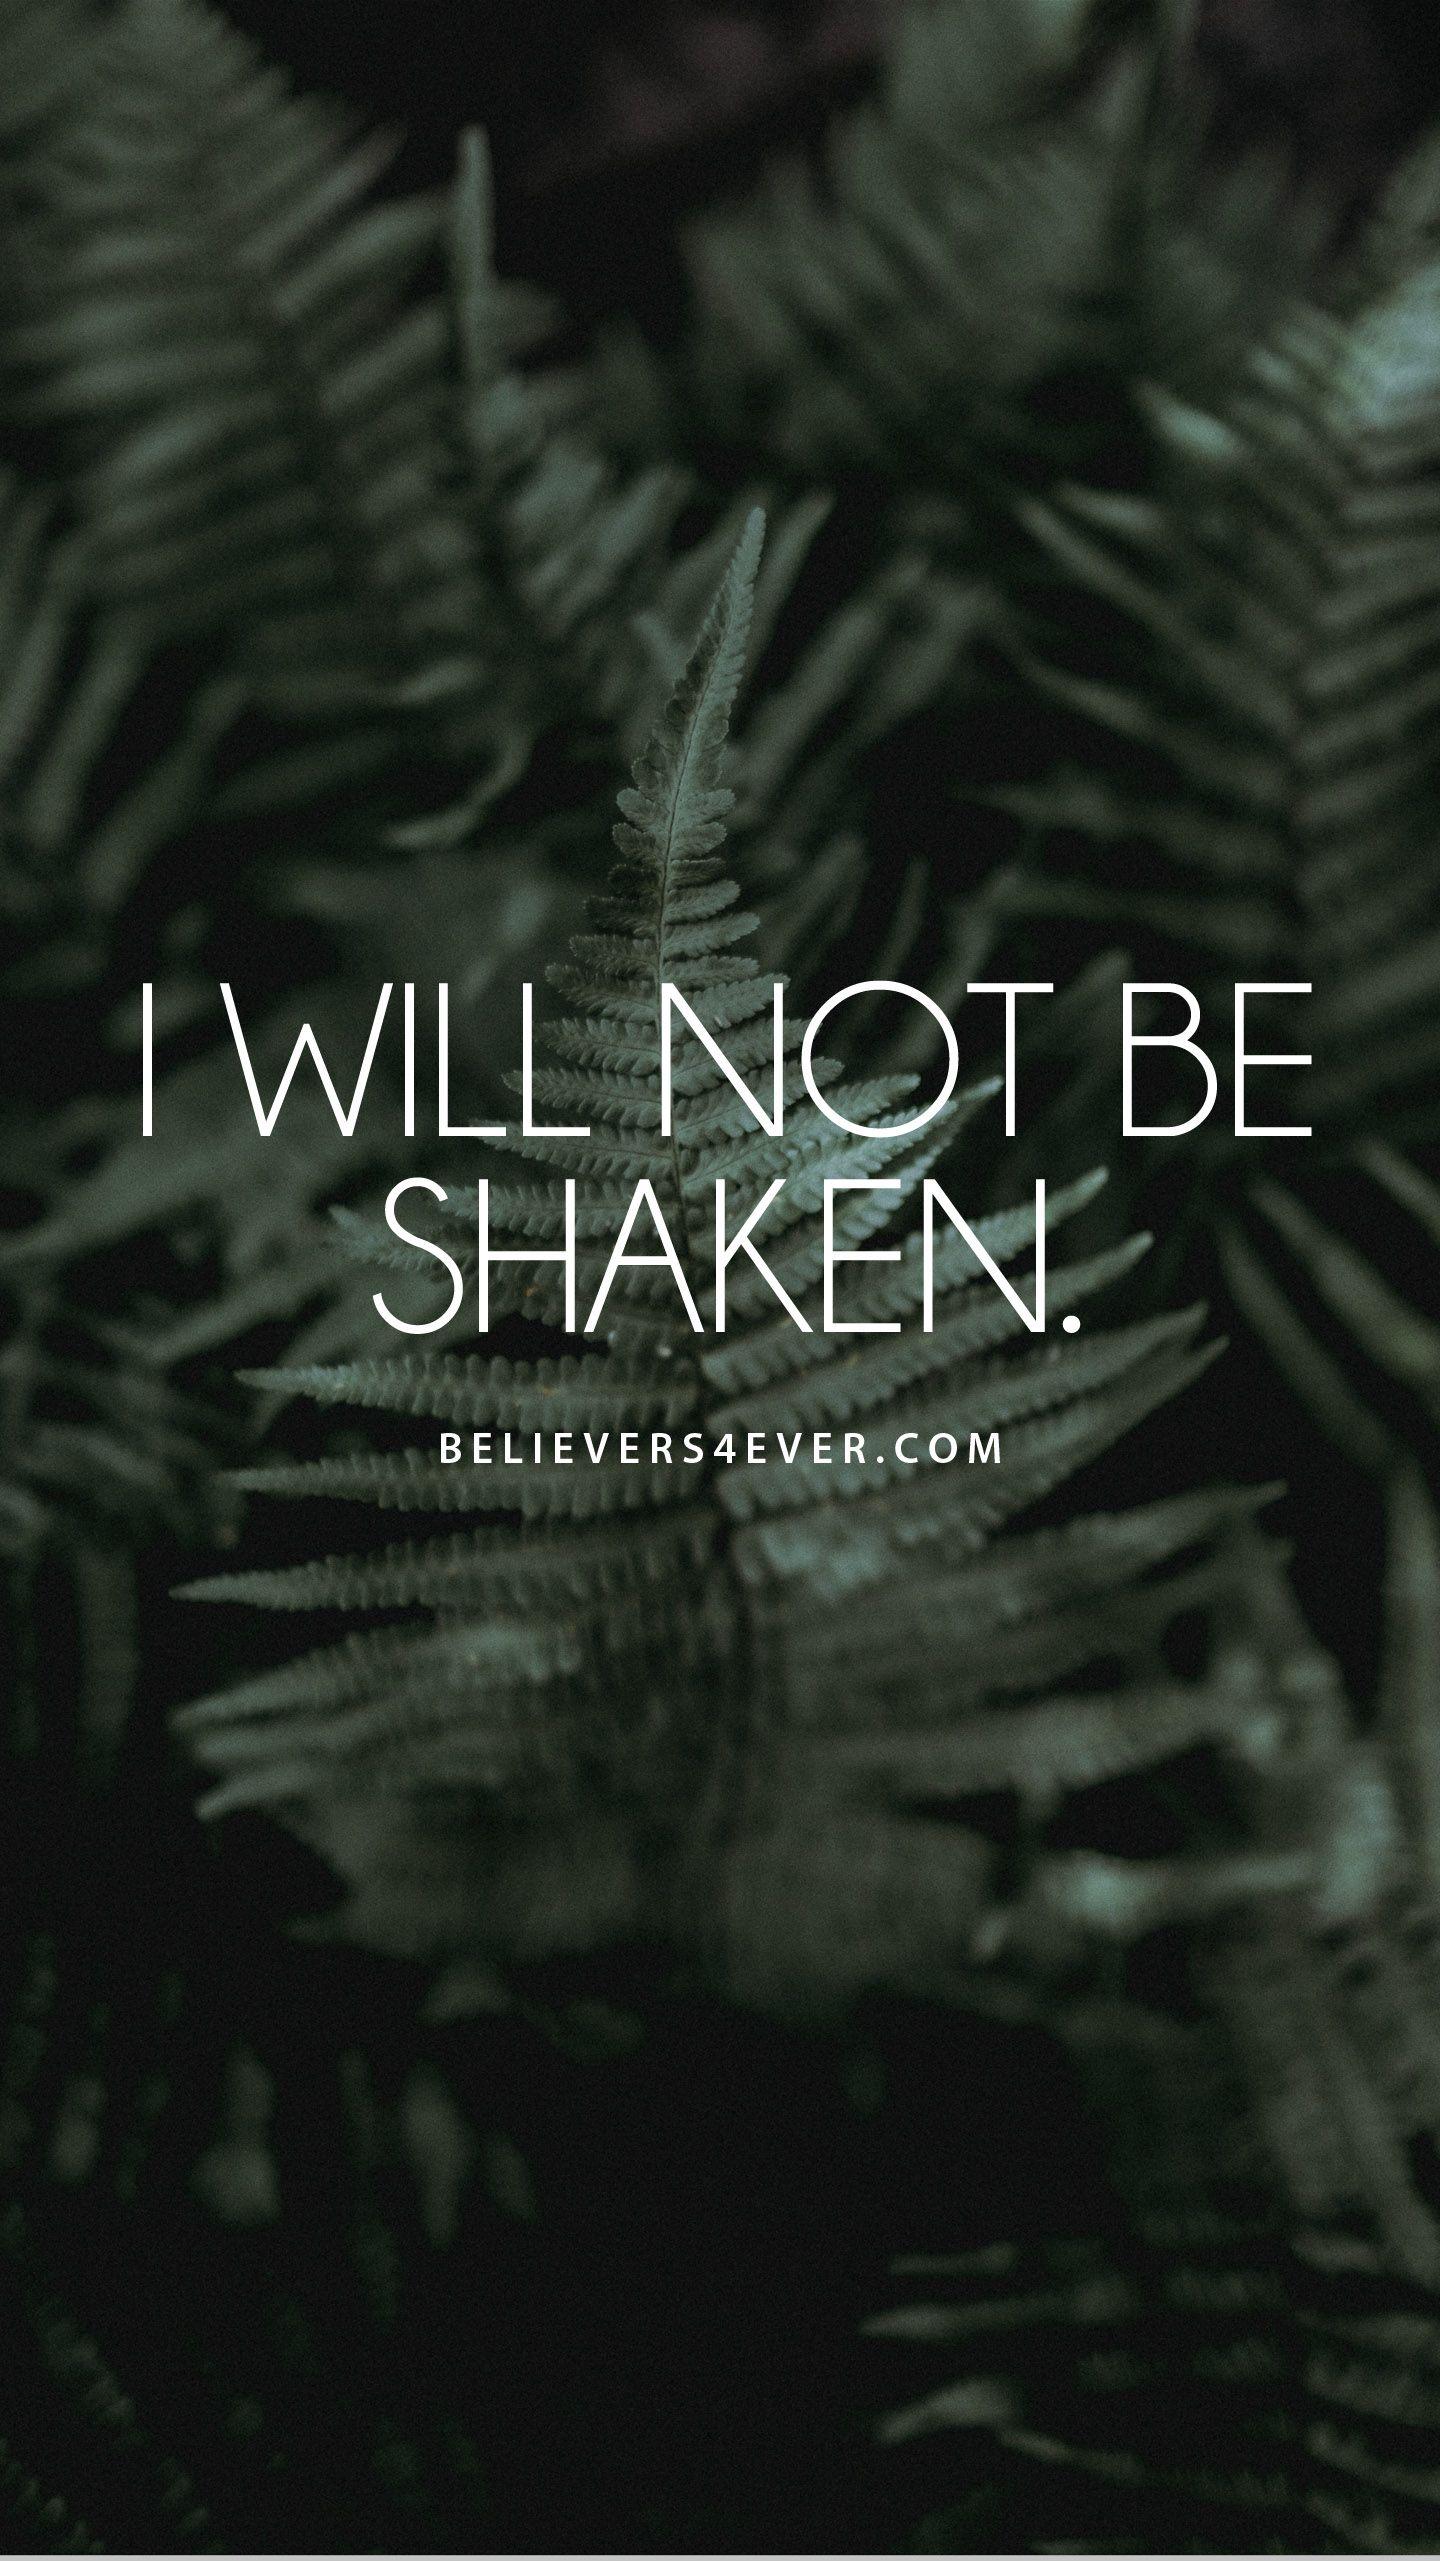 I will not be shaken. Scripture wallpaper, iPhone wallpaper